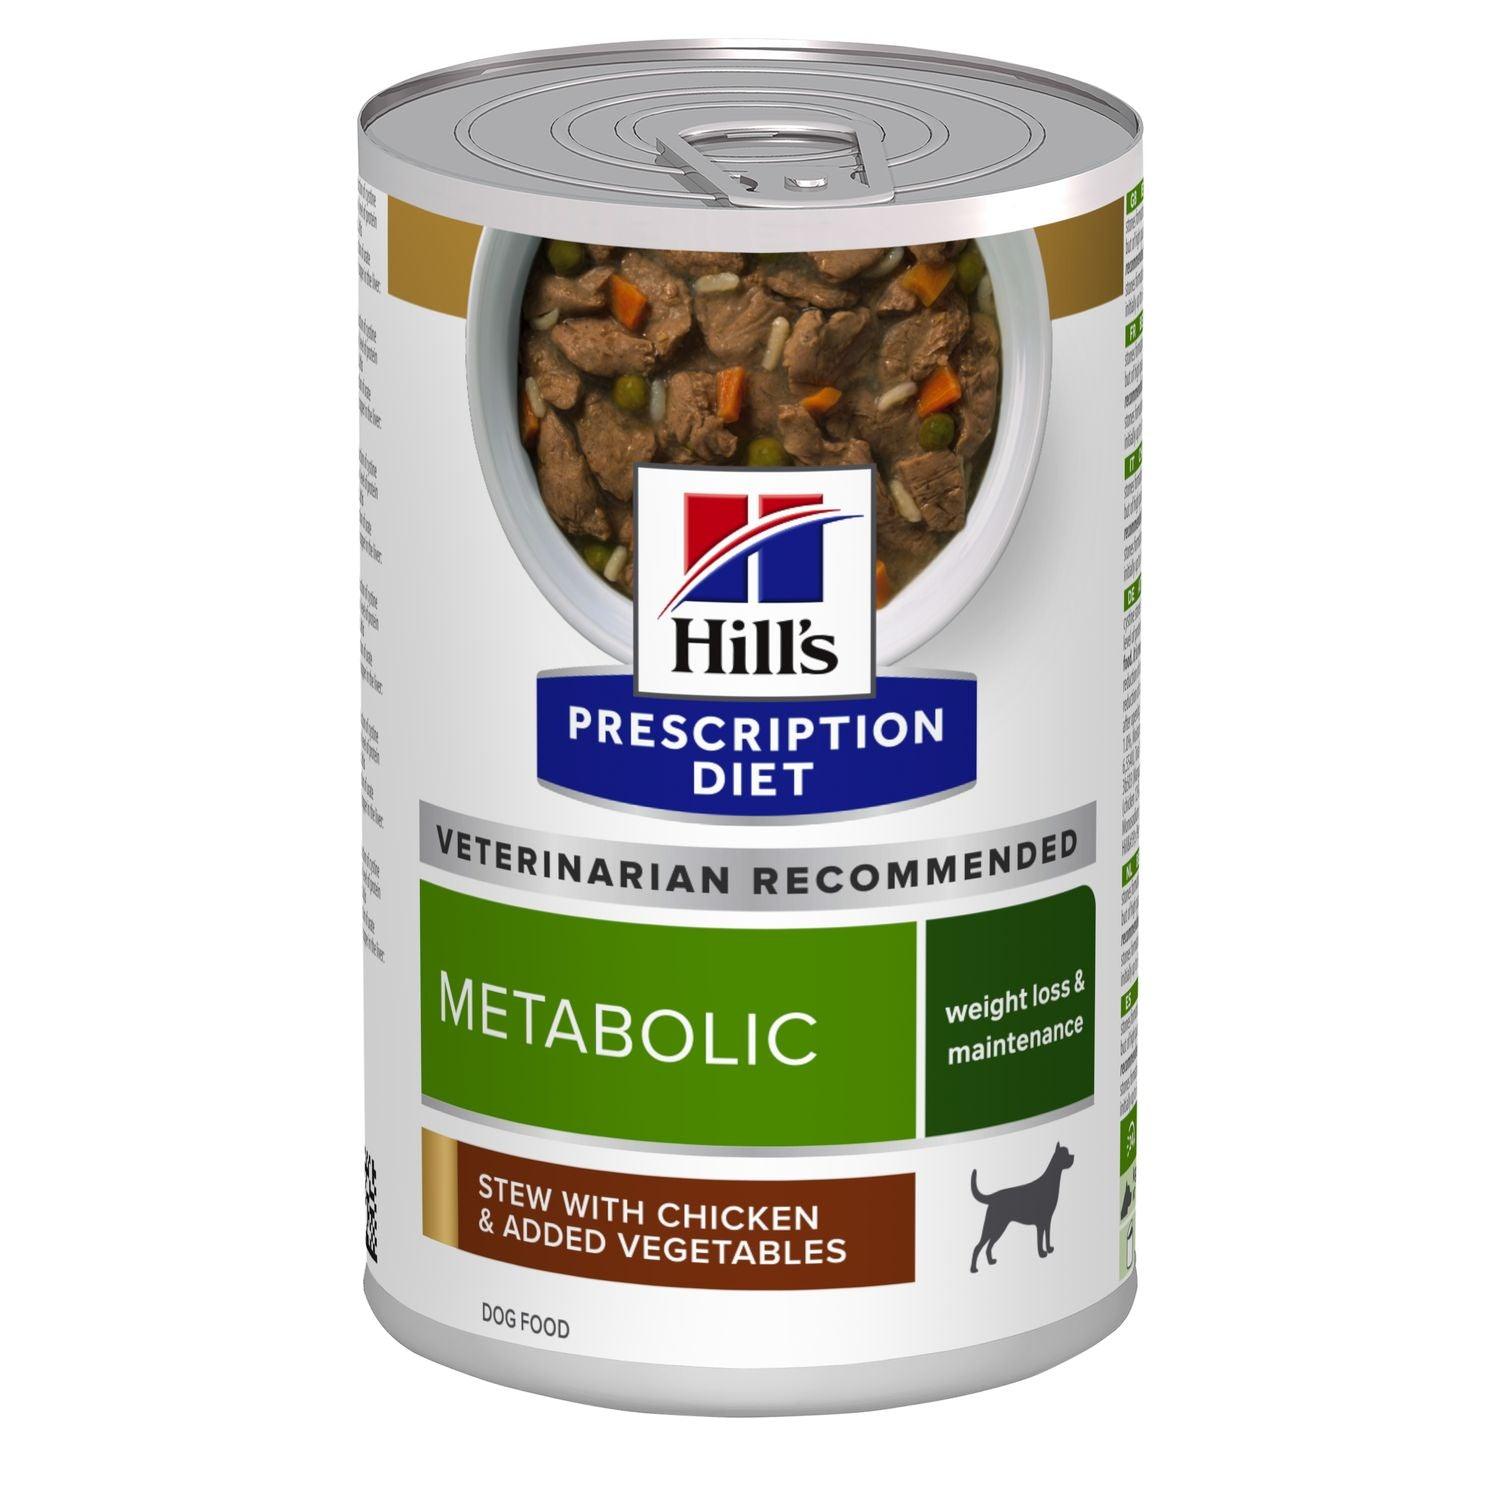 Canine Metabolic Ragout - Hill's Prescription Diet - Alter:Adult, Alter:Senior, Erkrankung:Übergewicht, Futterart:Trocken, Hersteller:Hill's Prescription Diet, Tierart:Hund - Marigin AG Onlineshop für Tierbedarf